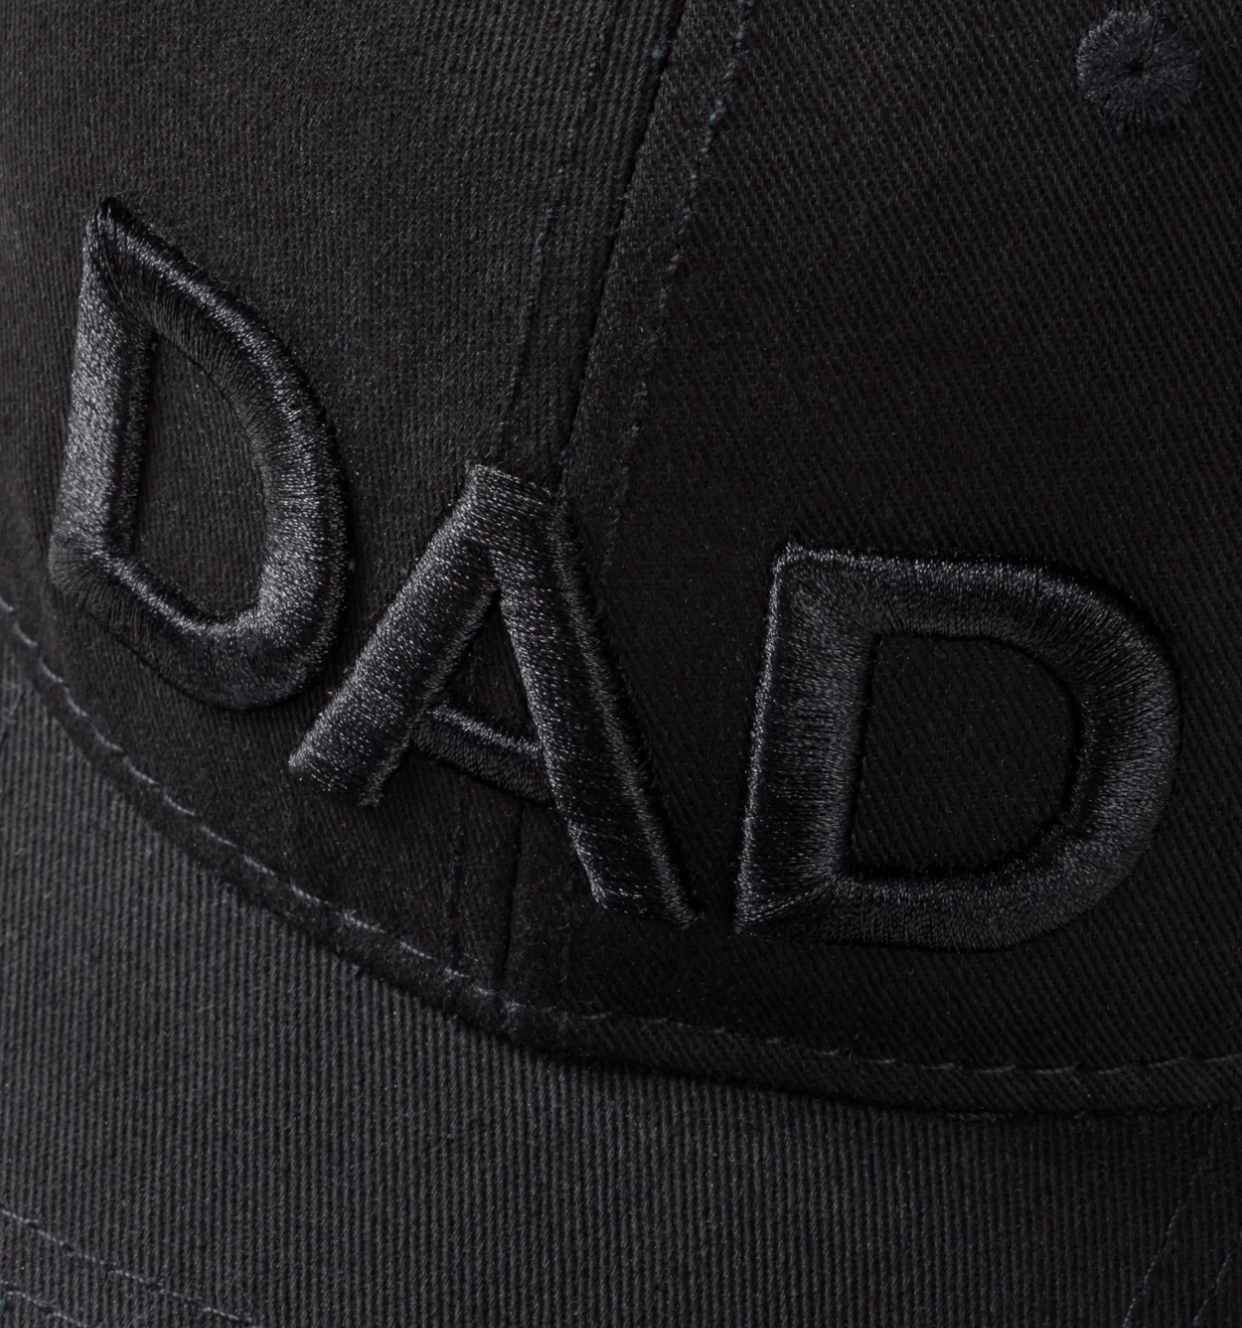 CASQUETTE COACH DAD CAP - RON DORFF